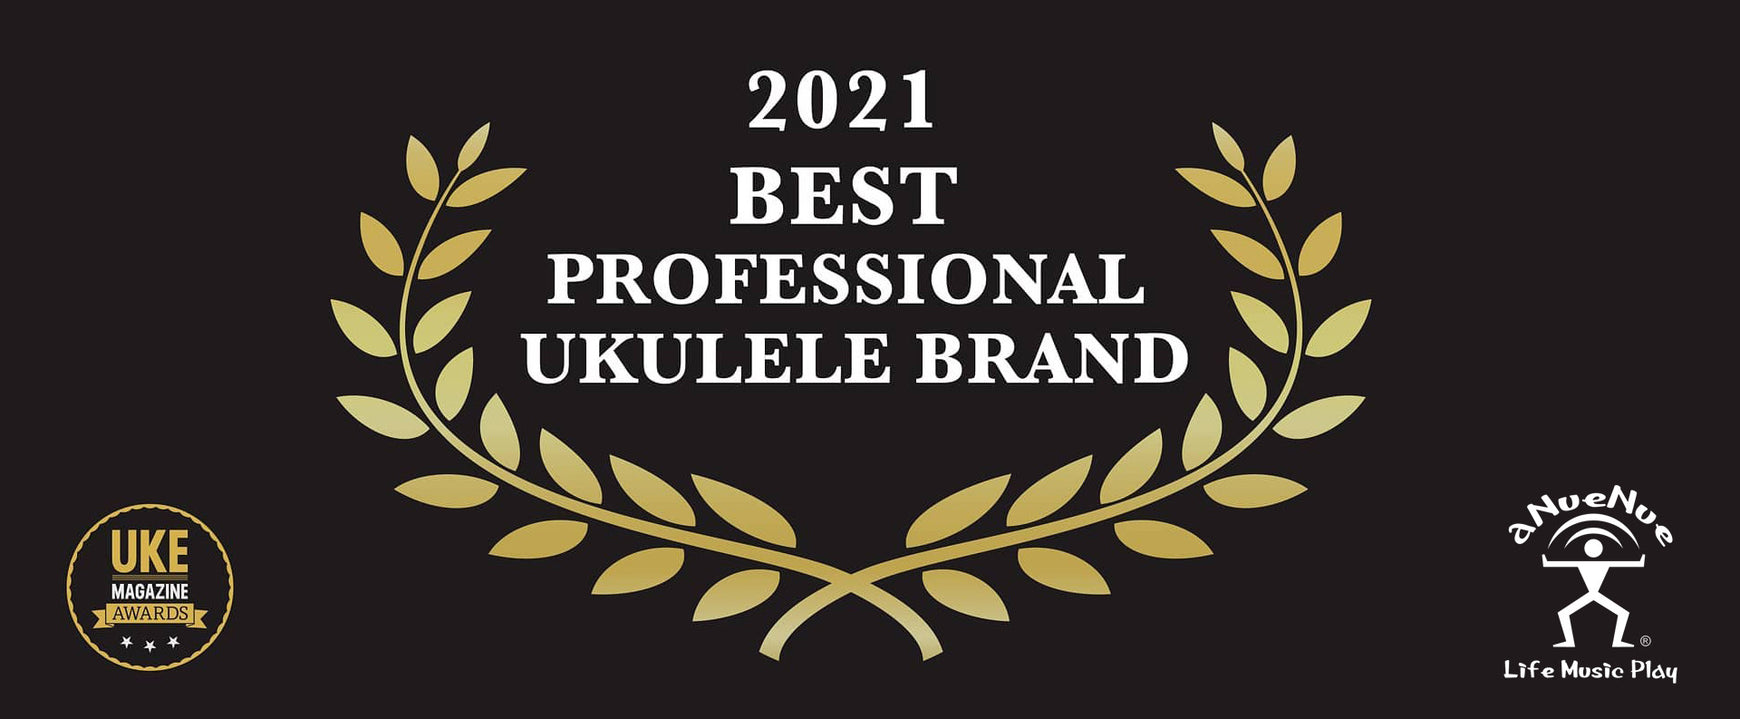 2021 Best Professional Ukulele Brand Award (Uke Magazine)